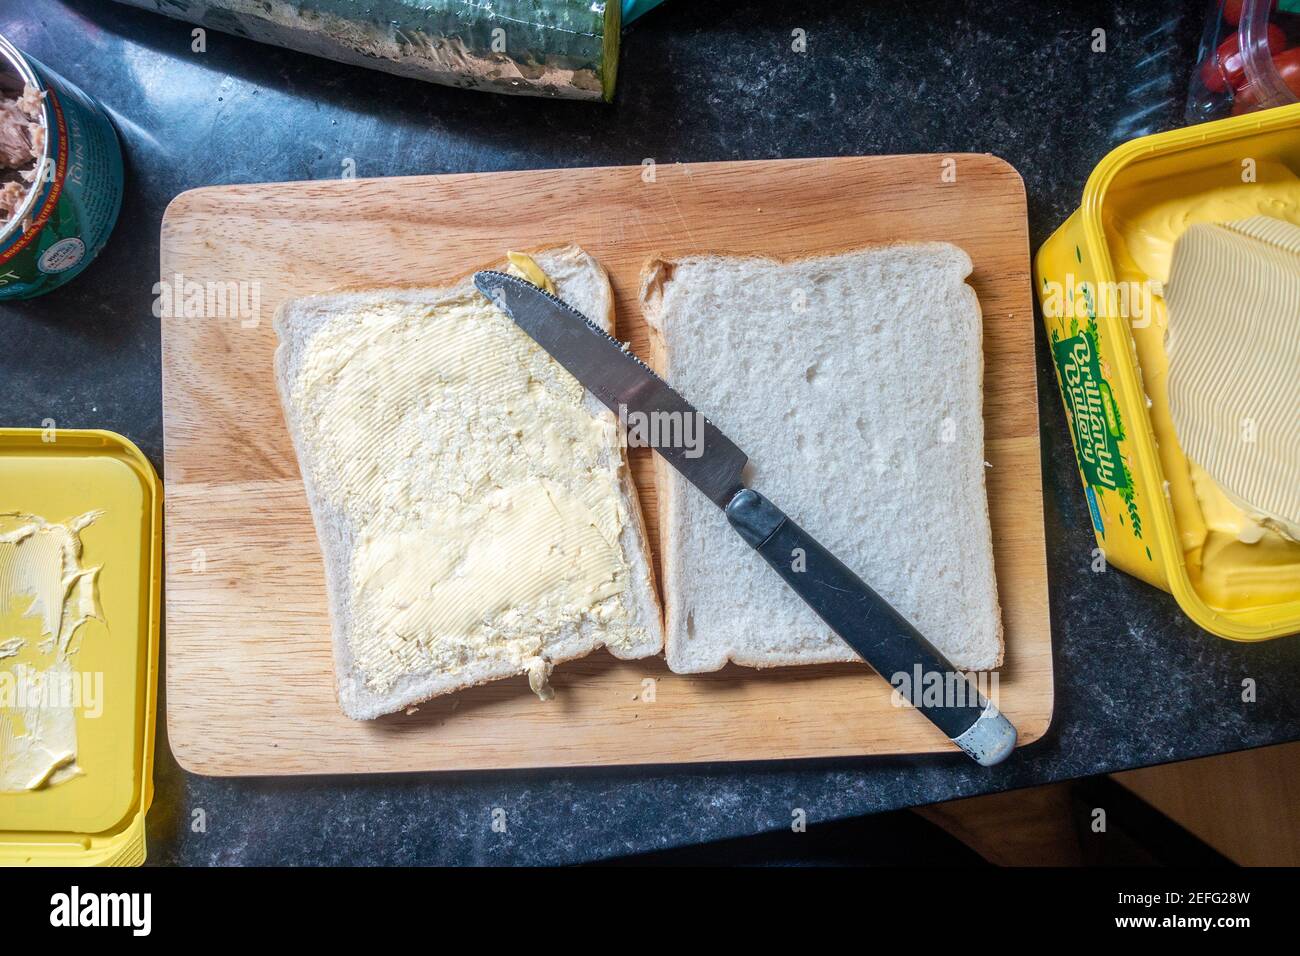 Pane bianco su un tagliere di legno e una vasca di burreria spalmata pronta per iniziare a preparare un panino per il pranzo. Foto Stock